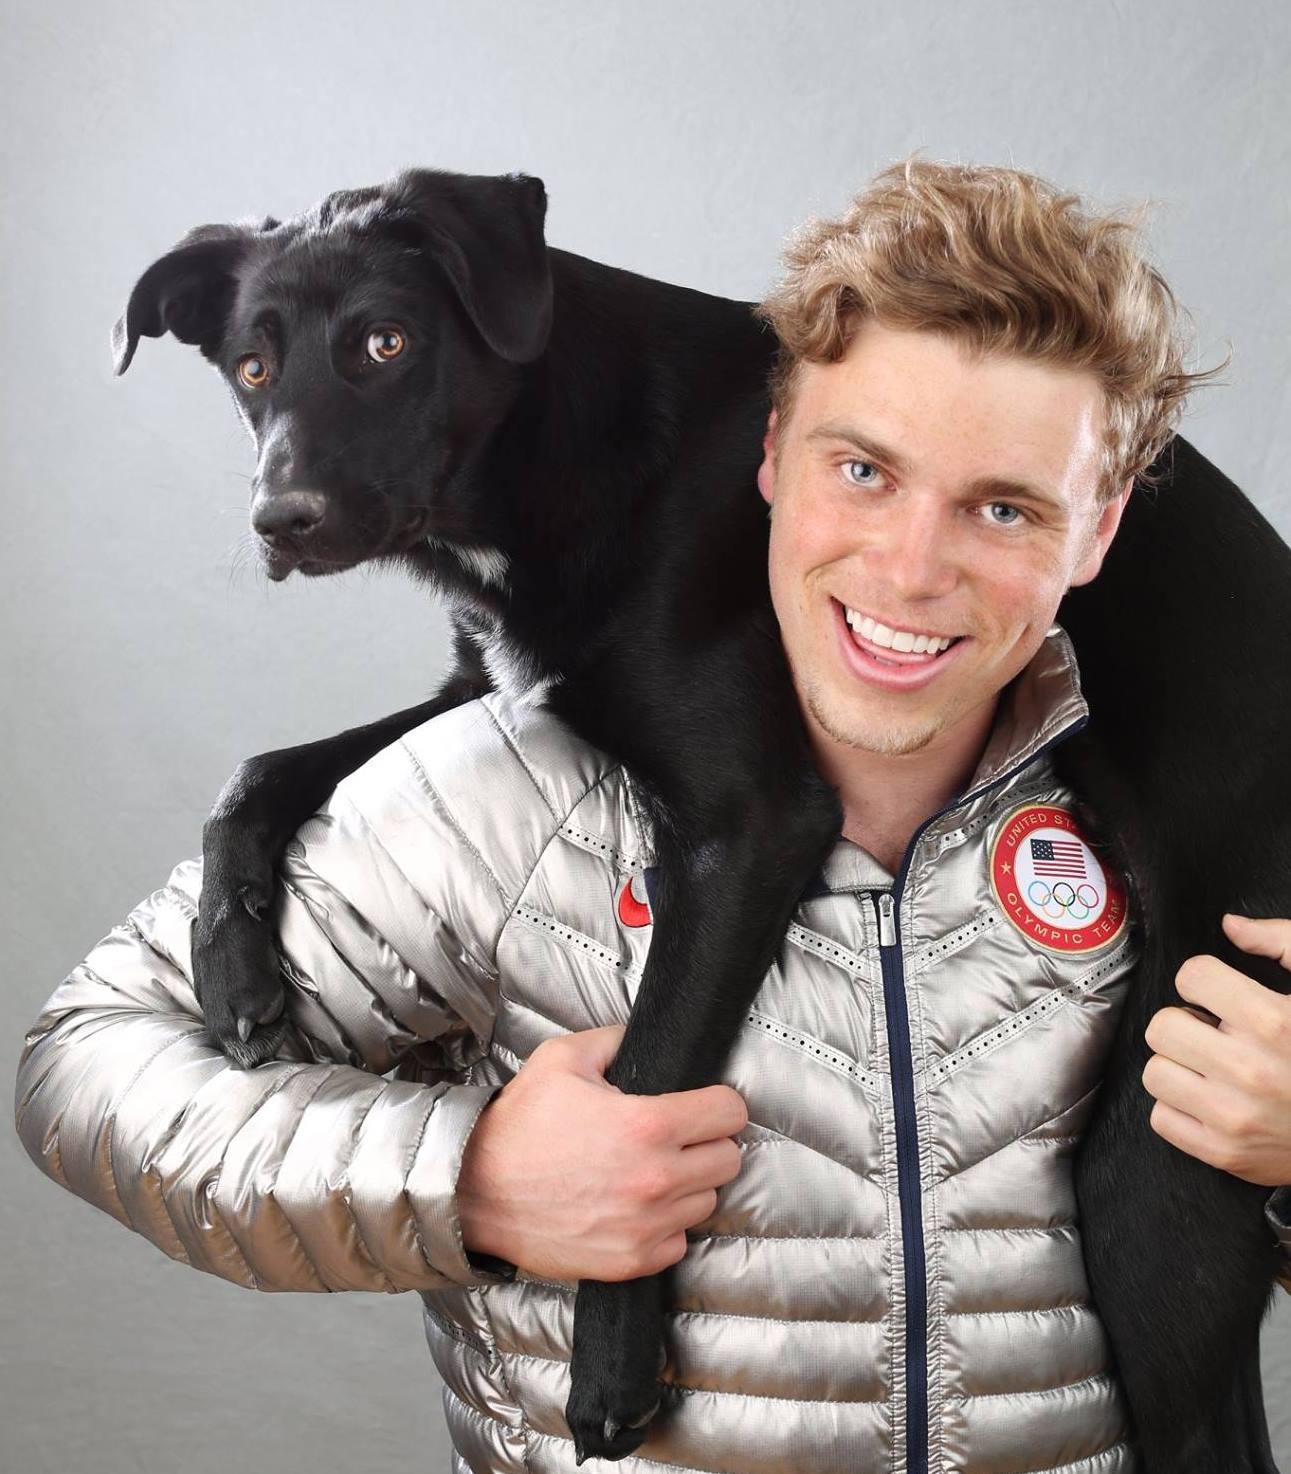 Olimpiadi in Corea: sciatore adotta un cane destinato al mercato della carne